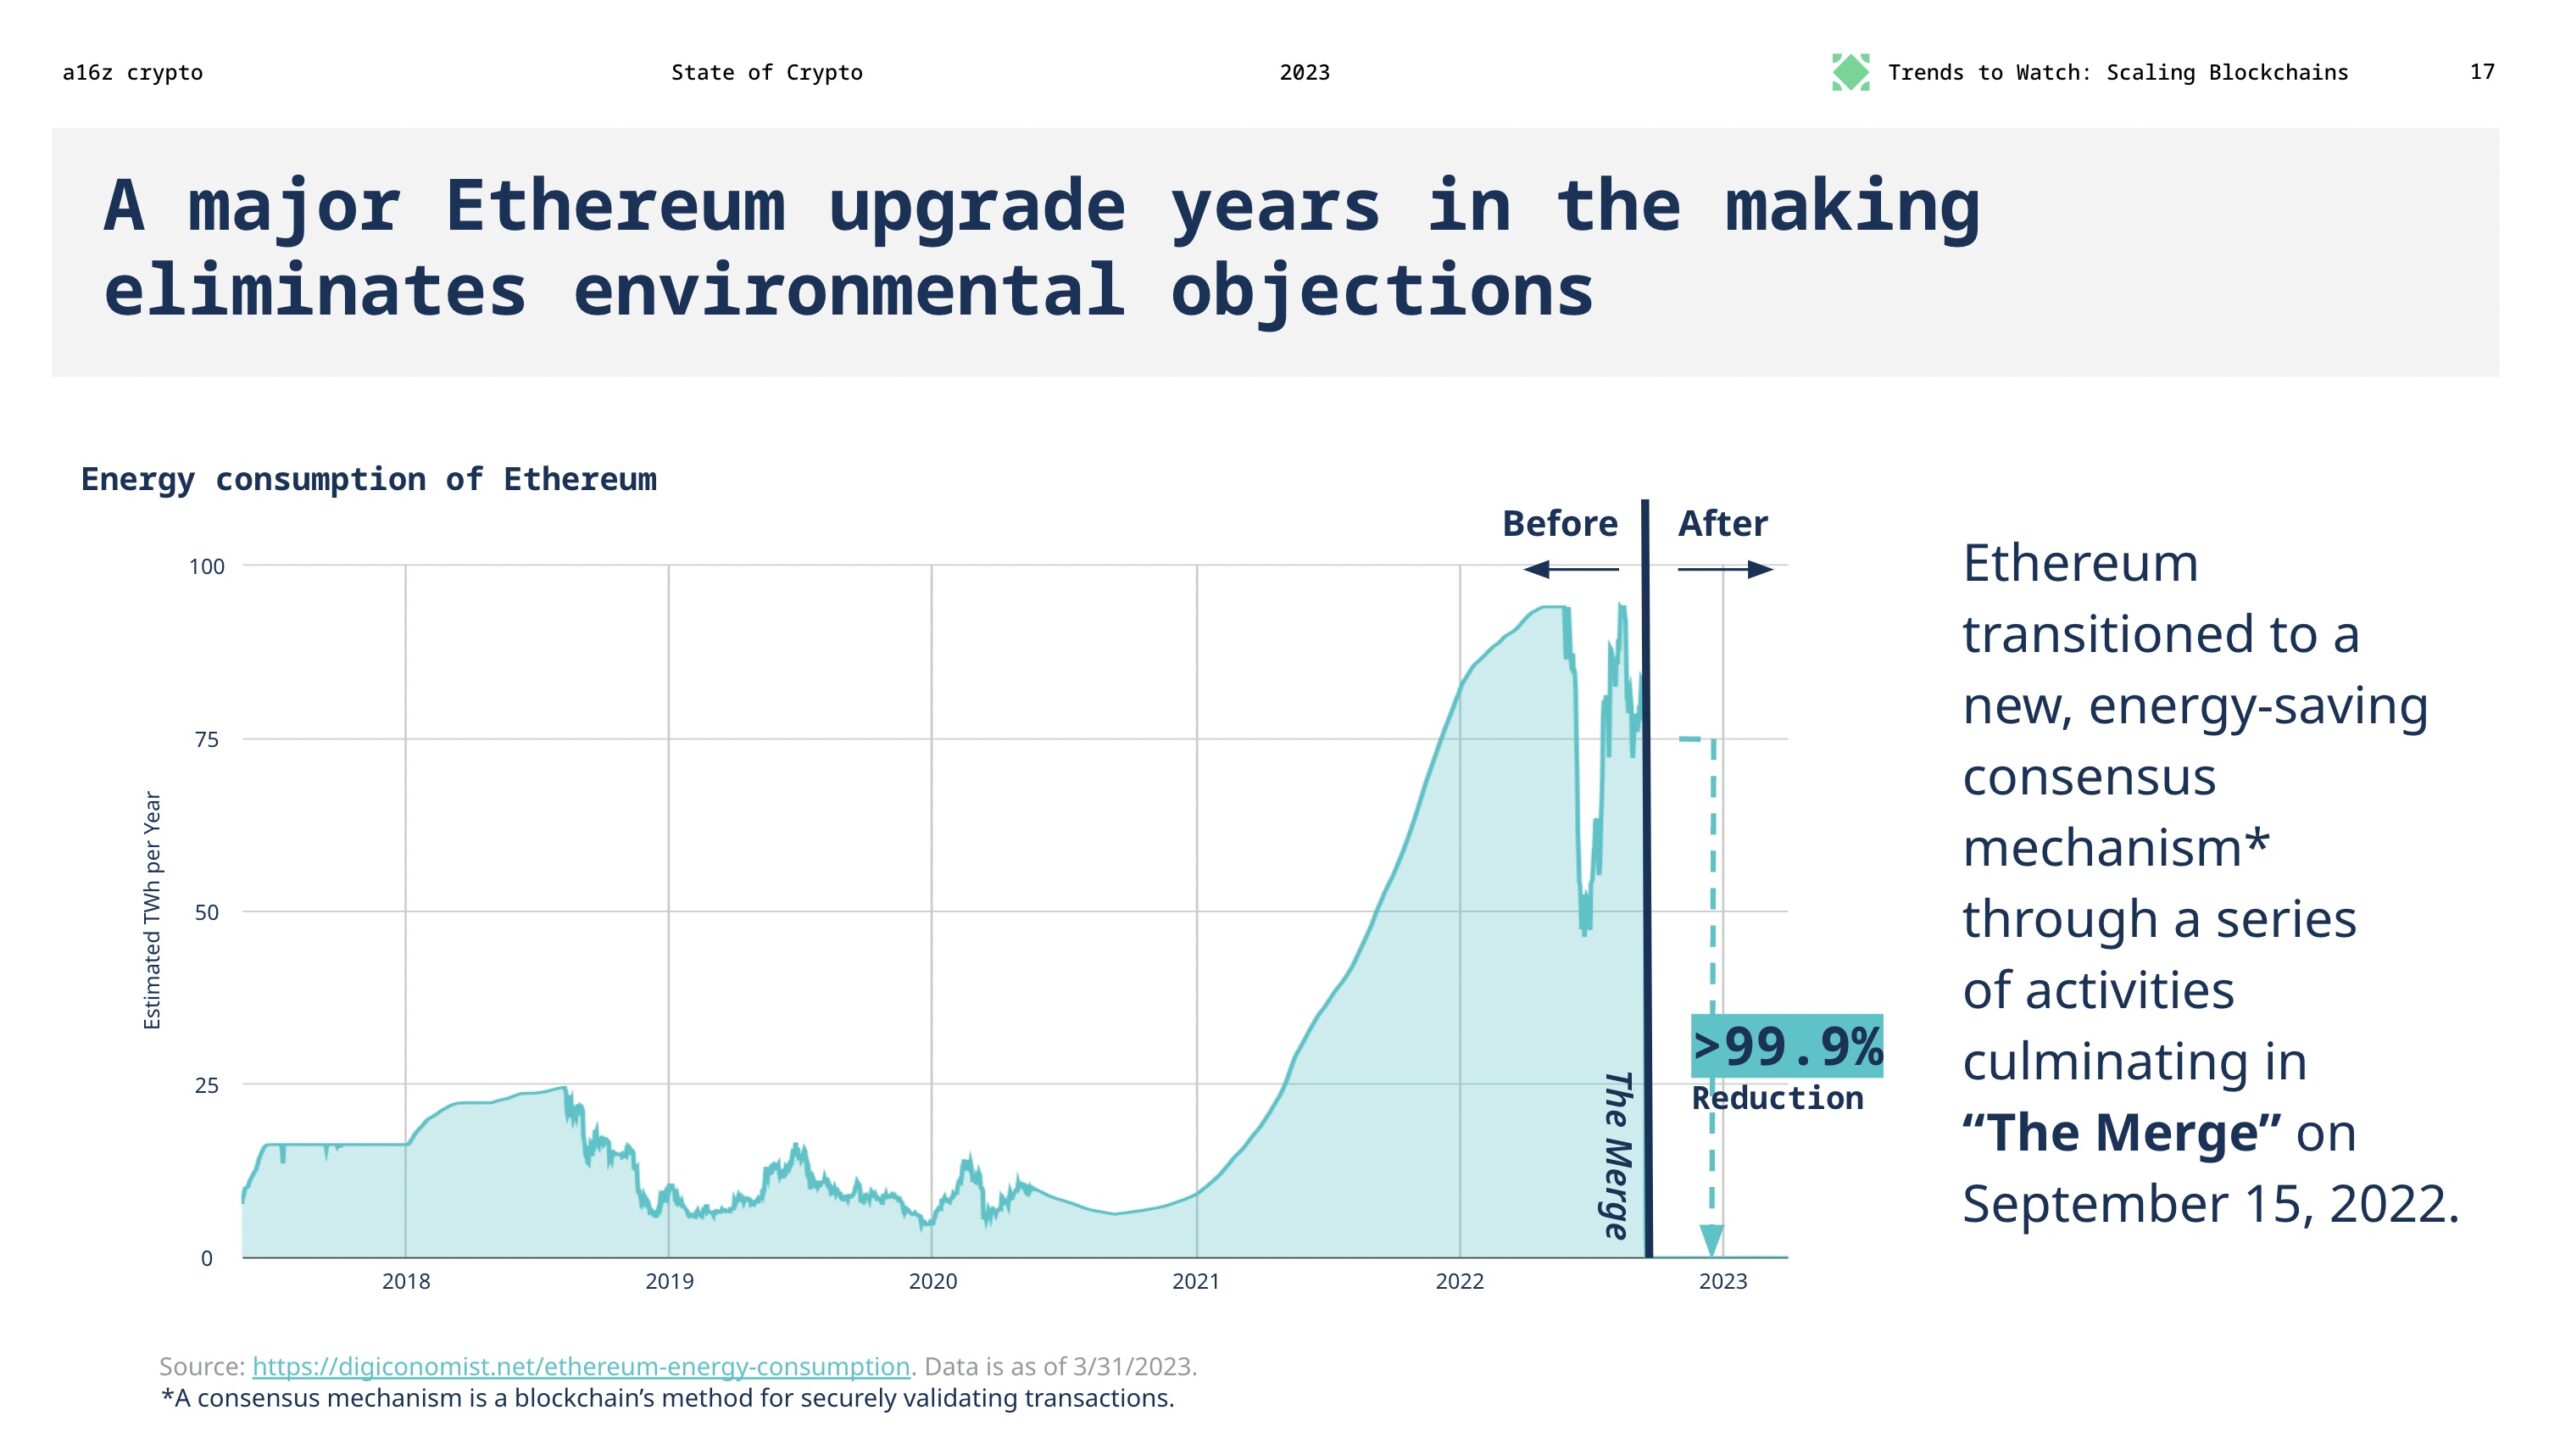 Ein großes Ethereum-Upgrade, das Jahre in der Entwicklung war, beseitigt Umwelteinwände